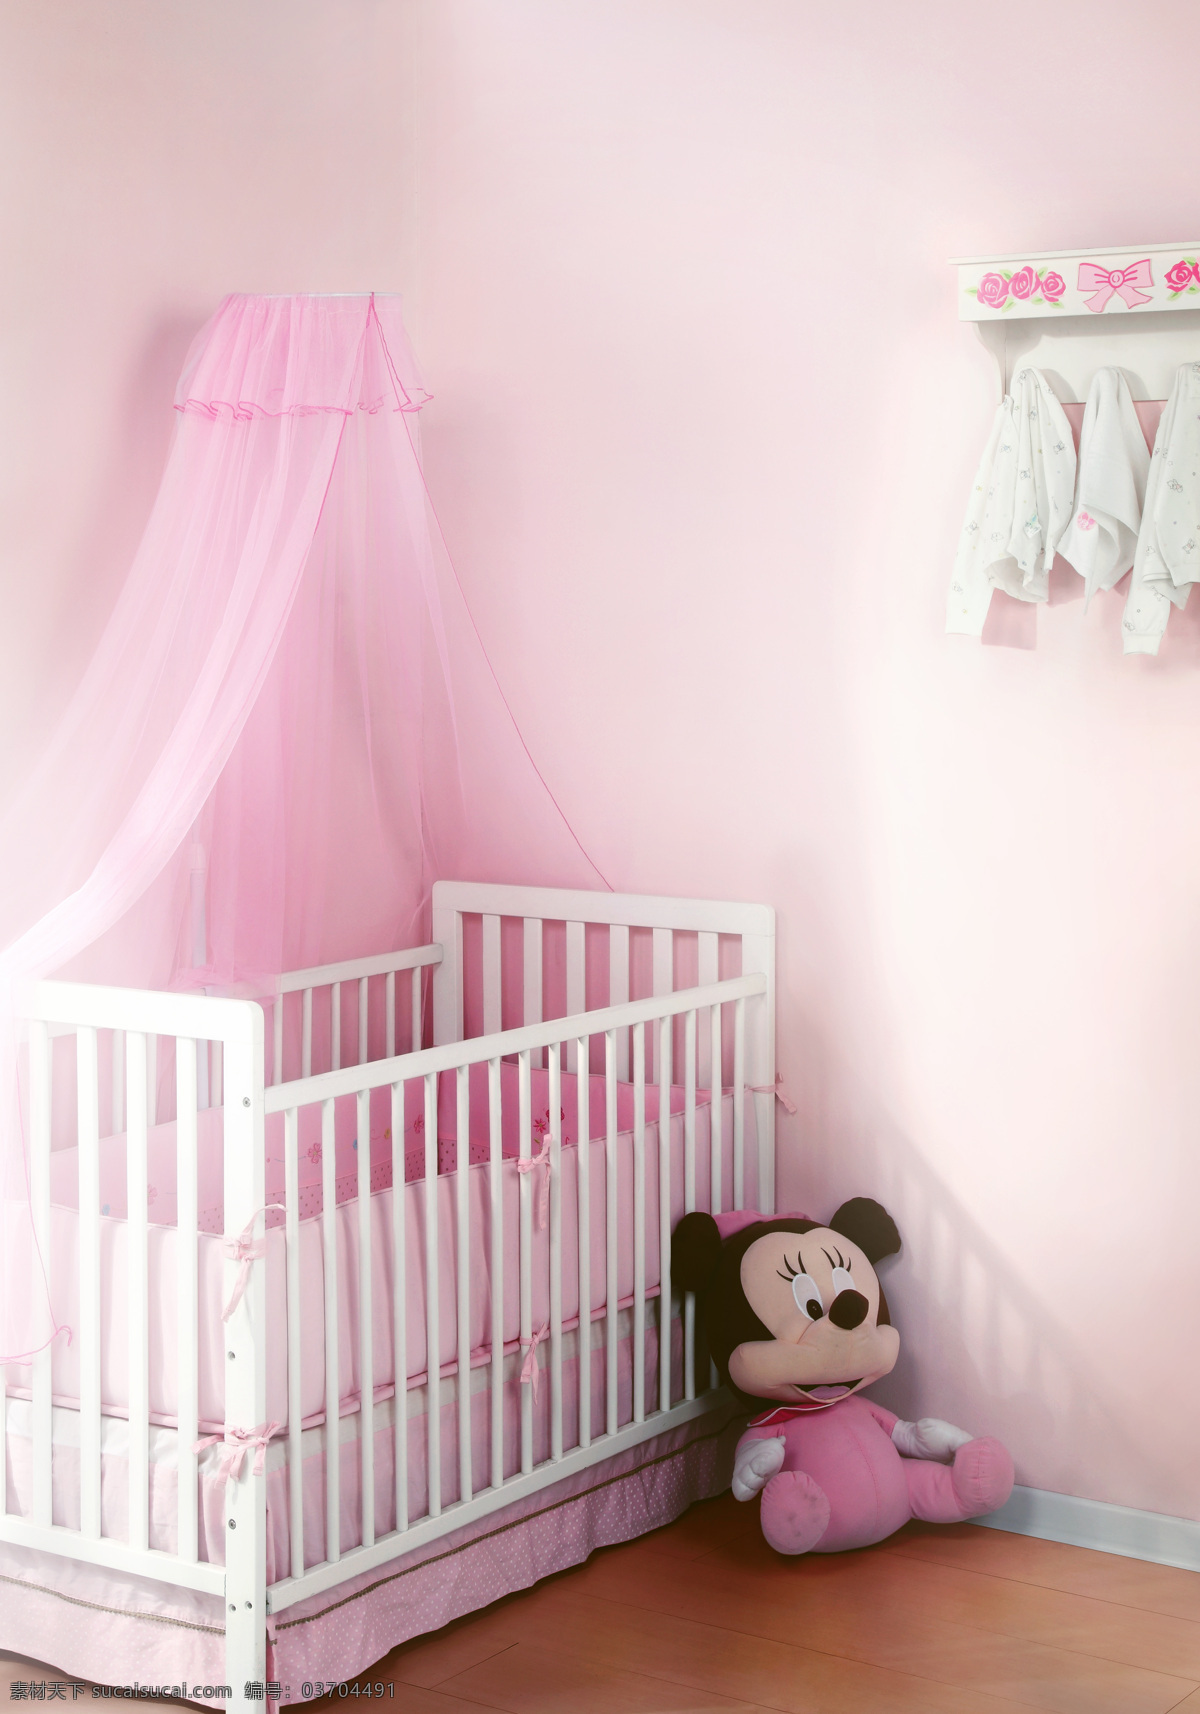 婴儿房 儿童房 婴儿床照片 迪士尼 米奇 米妮 背景 温馨 婴儿服饰 婴儿家具 婴儿用品 生活百科 家居生活